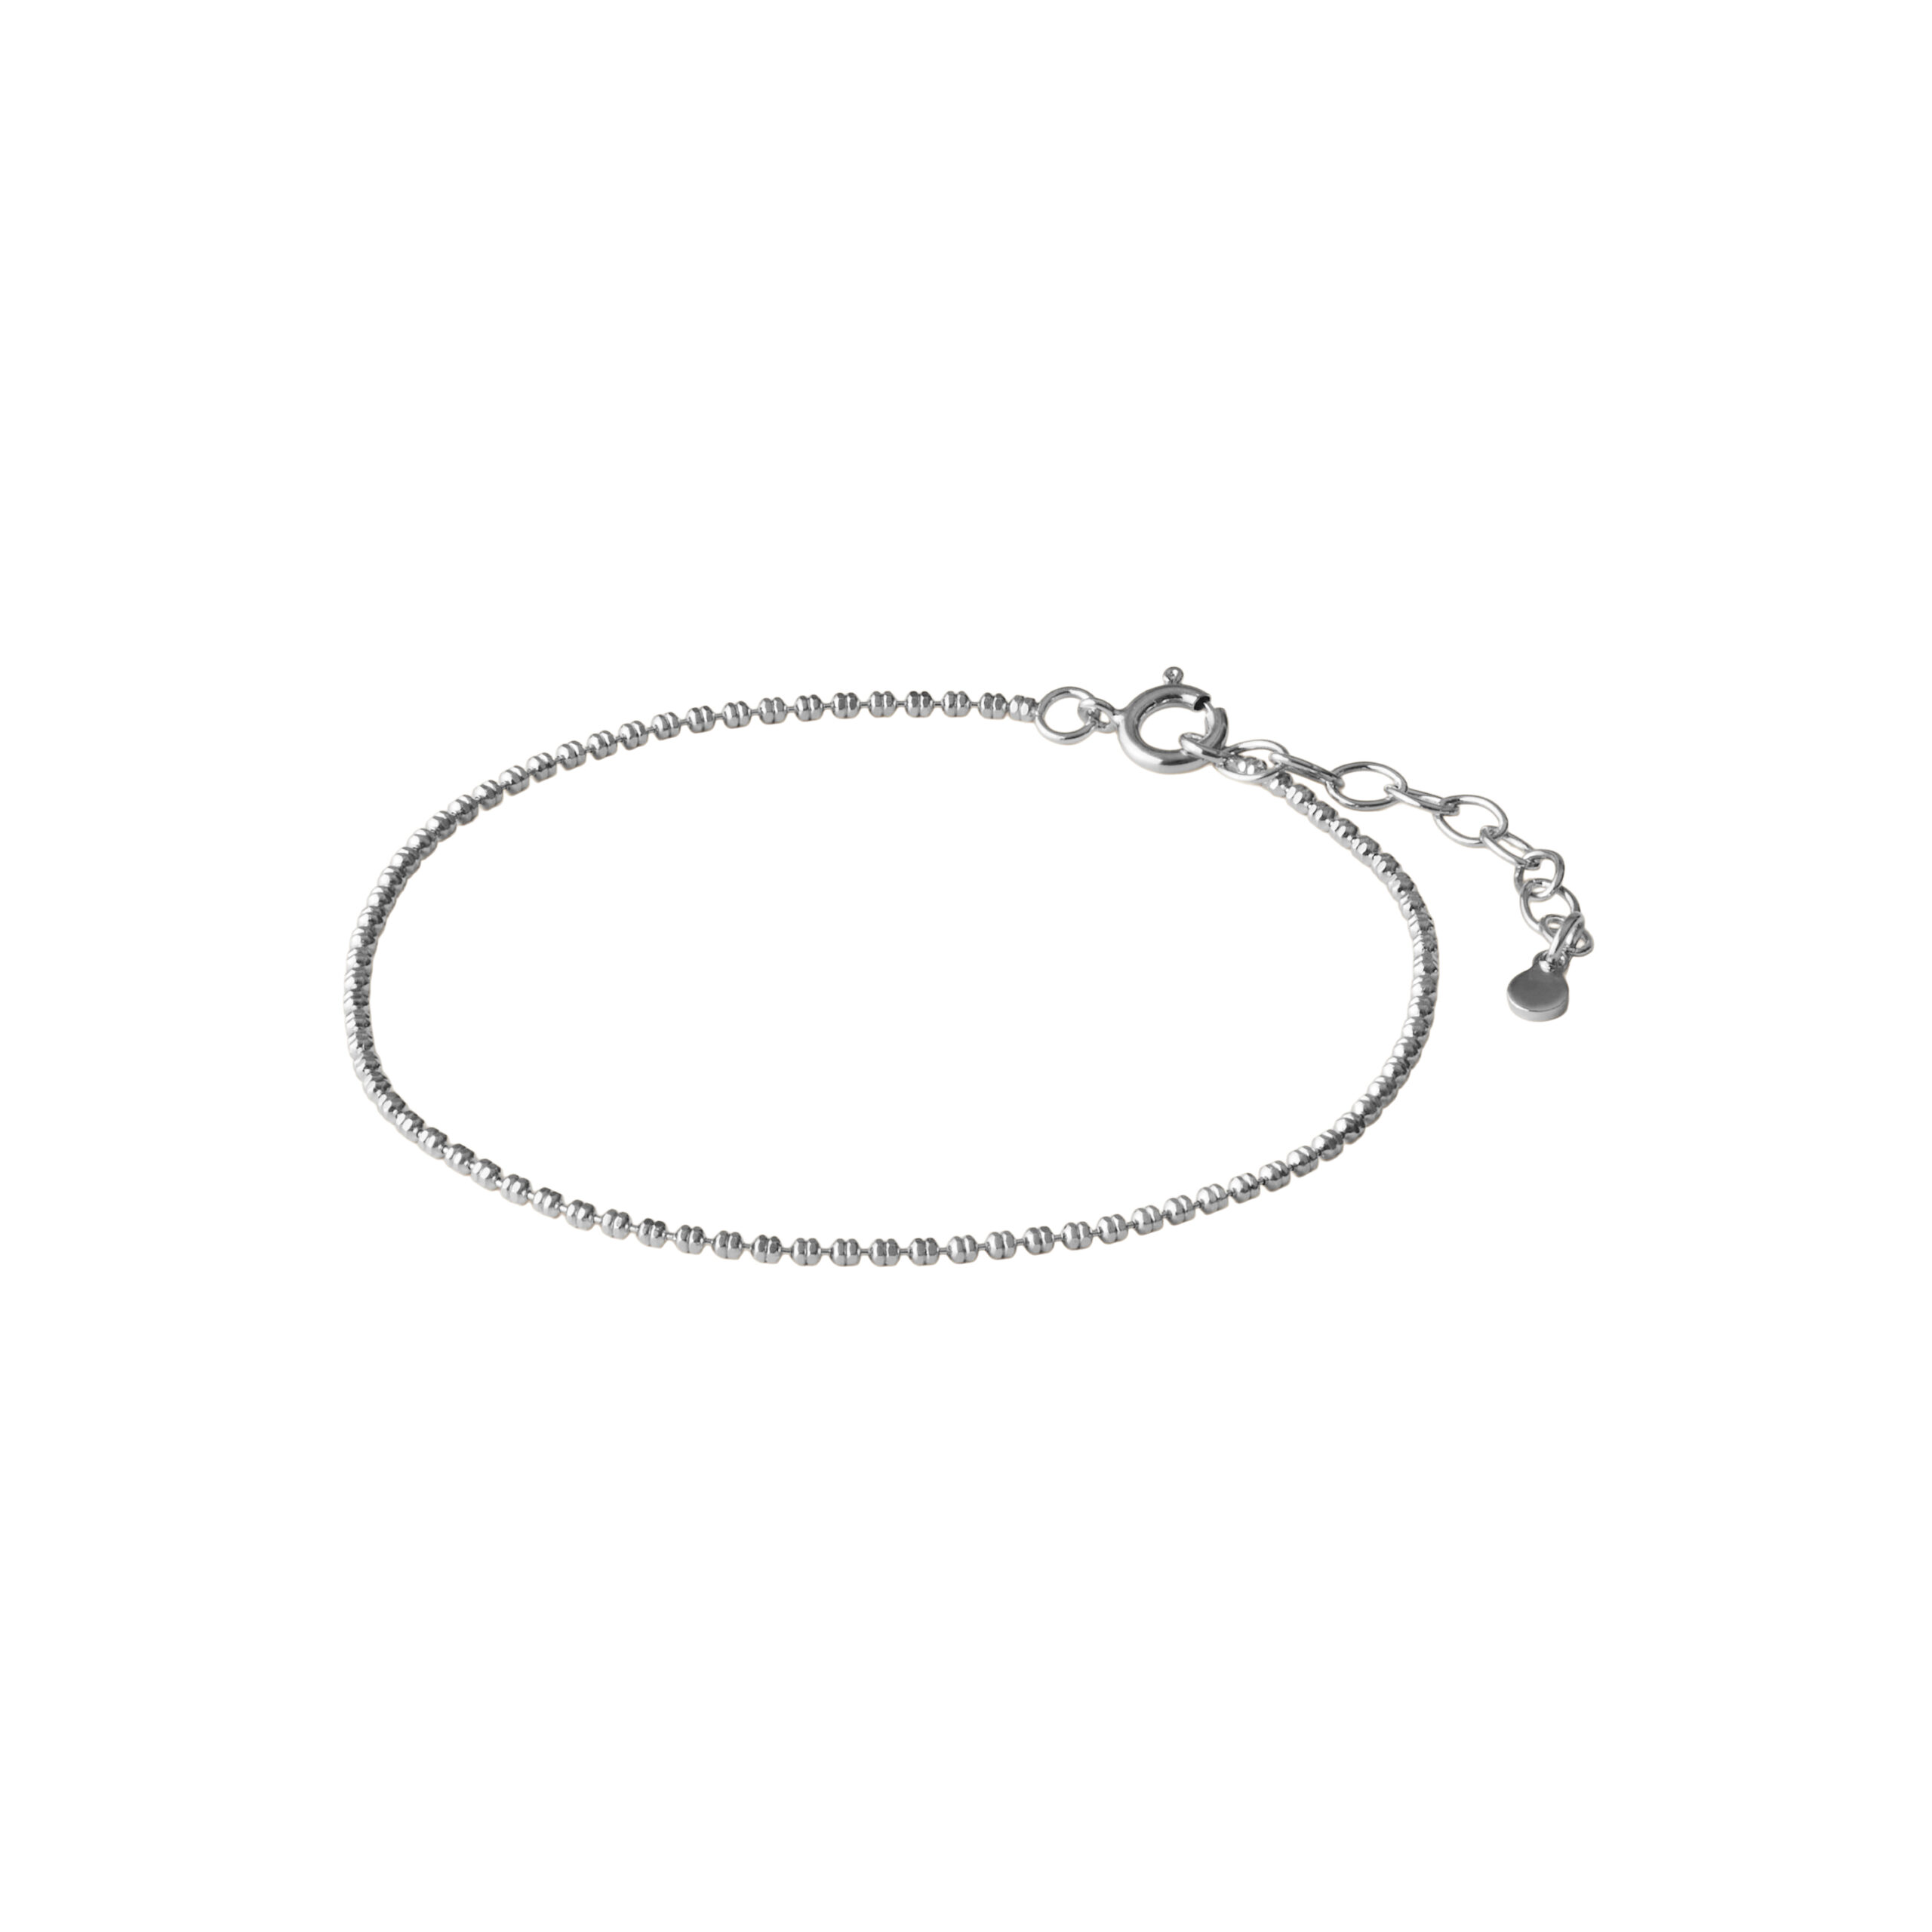 Nelly Bracelet: Tidløst smykke med minimalistisk elegance, tilgængeligt i sølv og forgyldt sølv. Justerbar længde fra 16 til 19 cm, lavet med certificeret genbrugssølv.